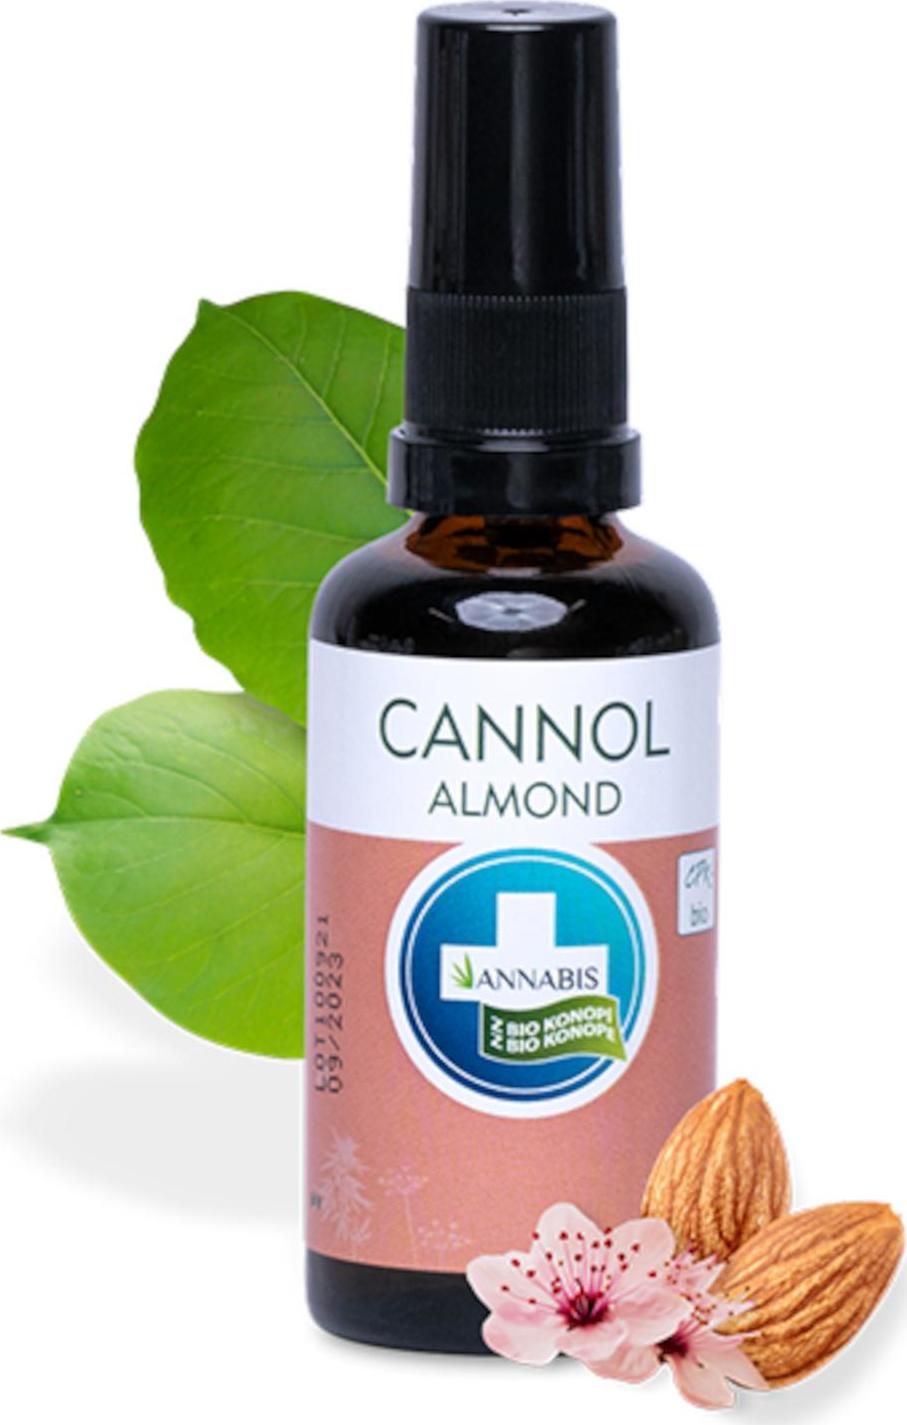 Annabis Cannol Almond bio konopný & mandlový olej 50 ml